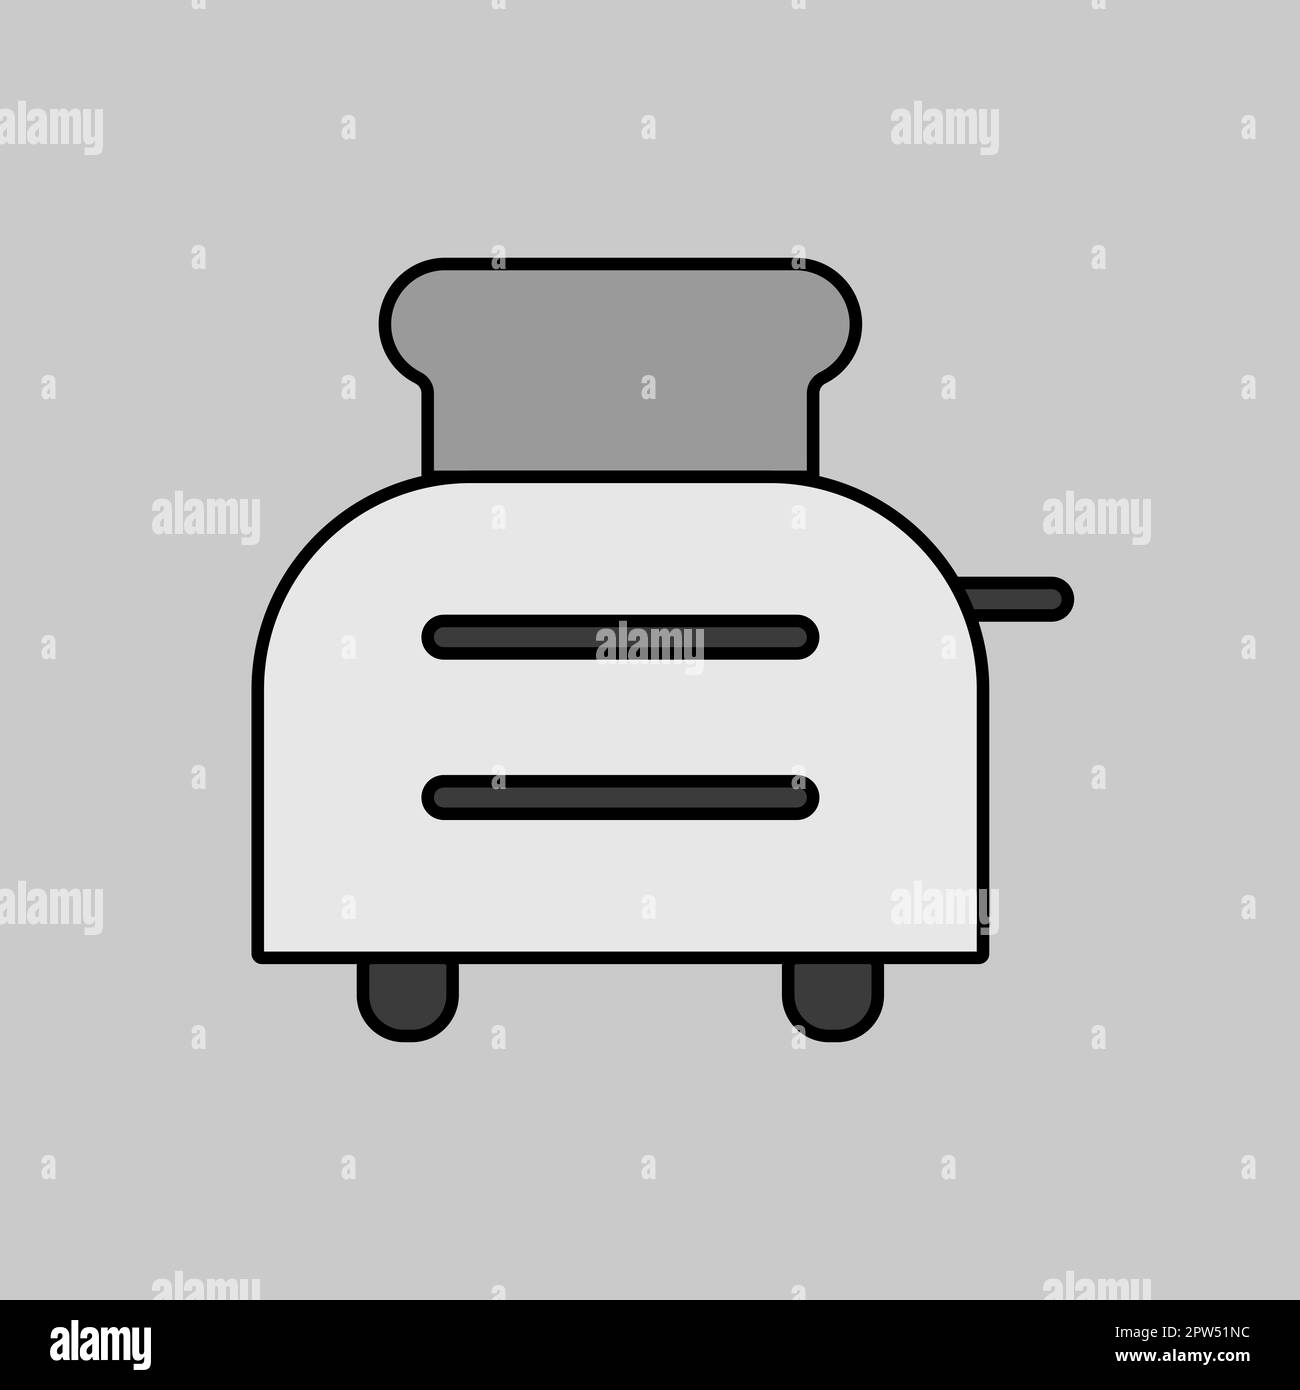 Bread toaster Banque d'images noir et blanc - Page 2 - Alamy